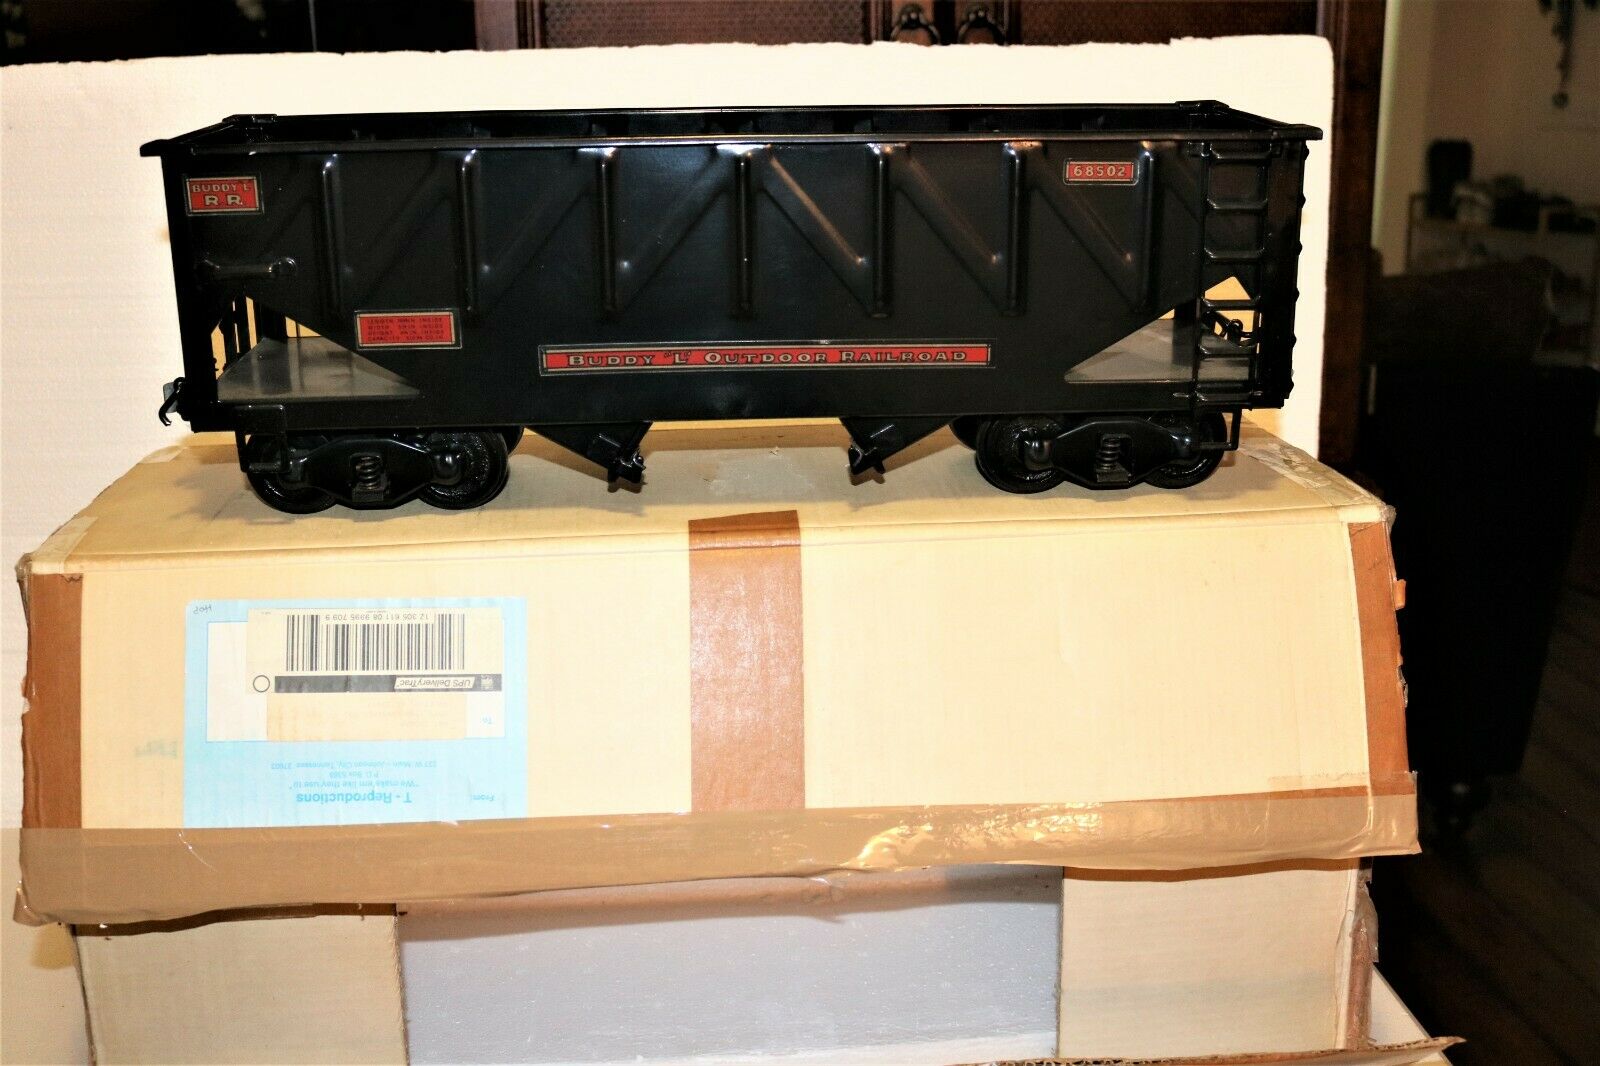 Mint T-reproductions Buddy L Railroad No.68502 Hopper Car W/box & Original Foam